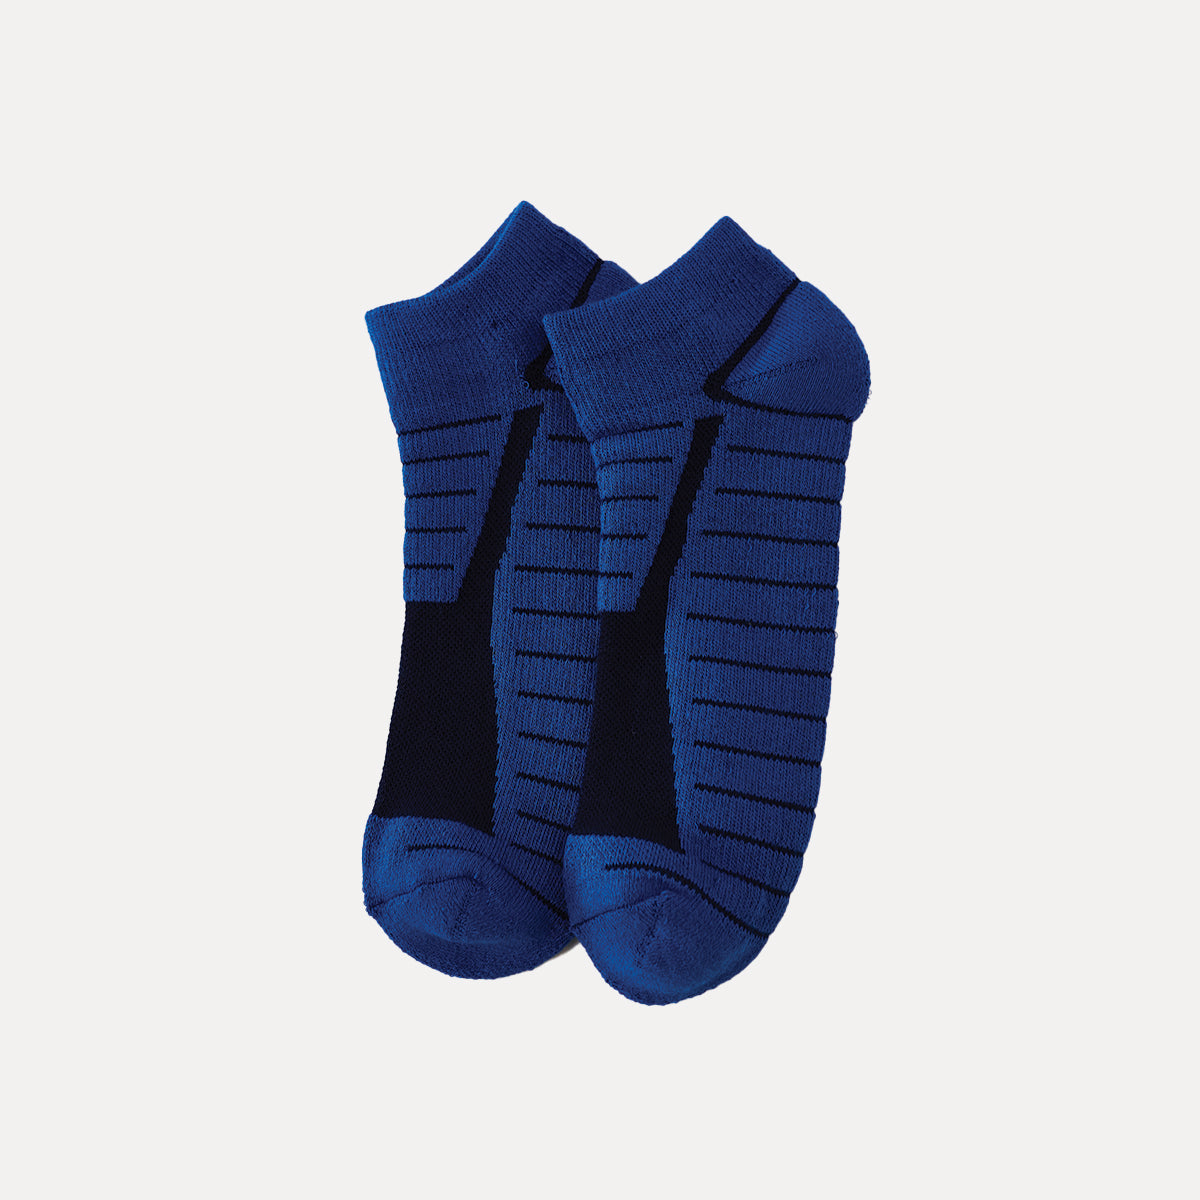 襪子 |踝墊襪 - 藍色/黑色